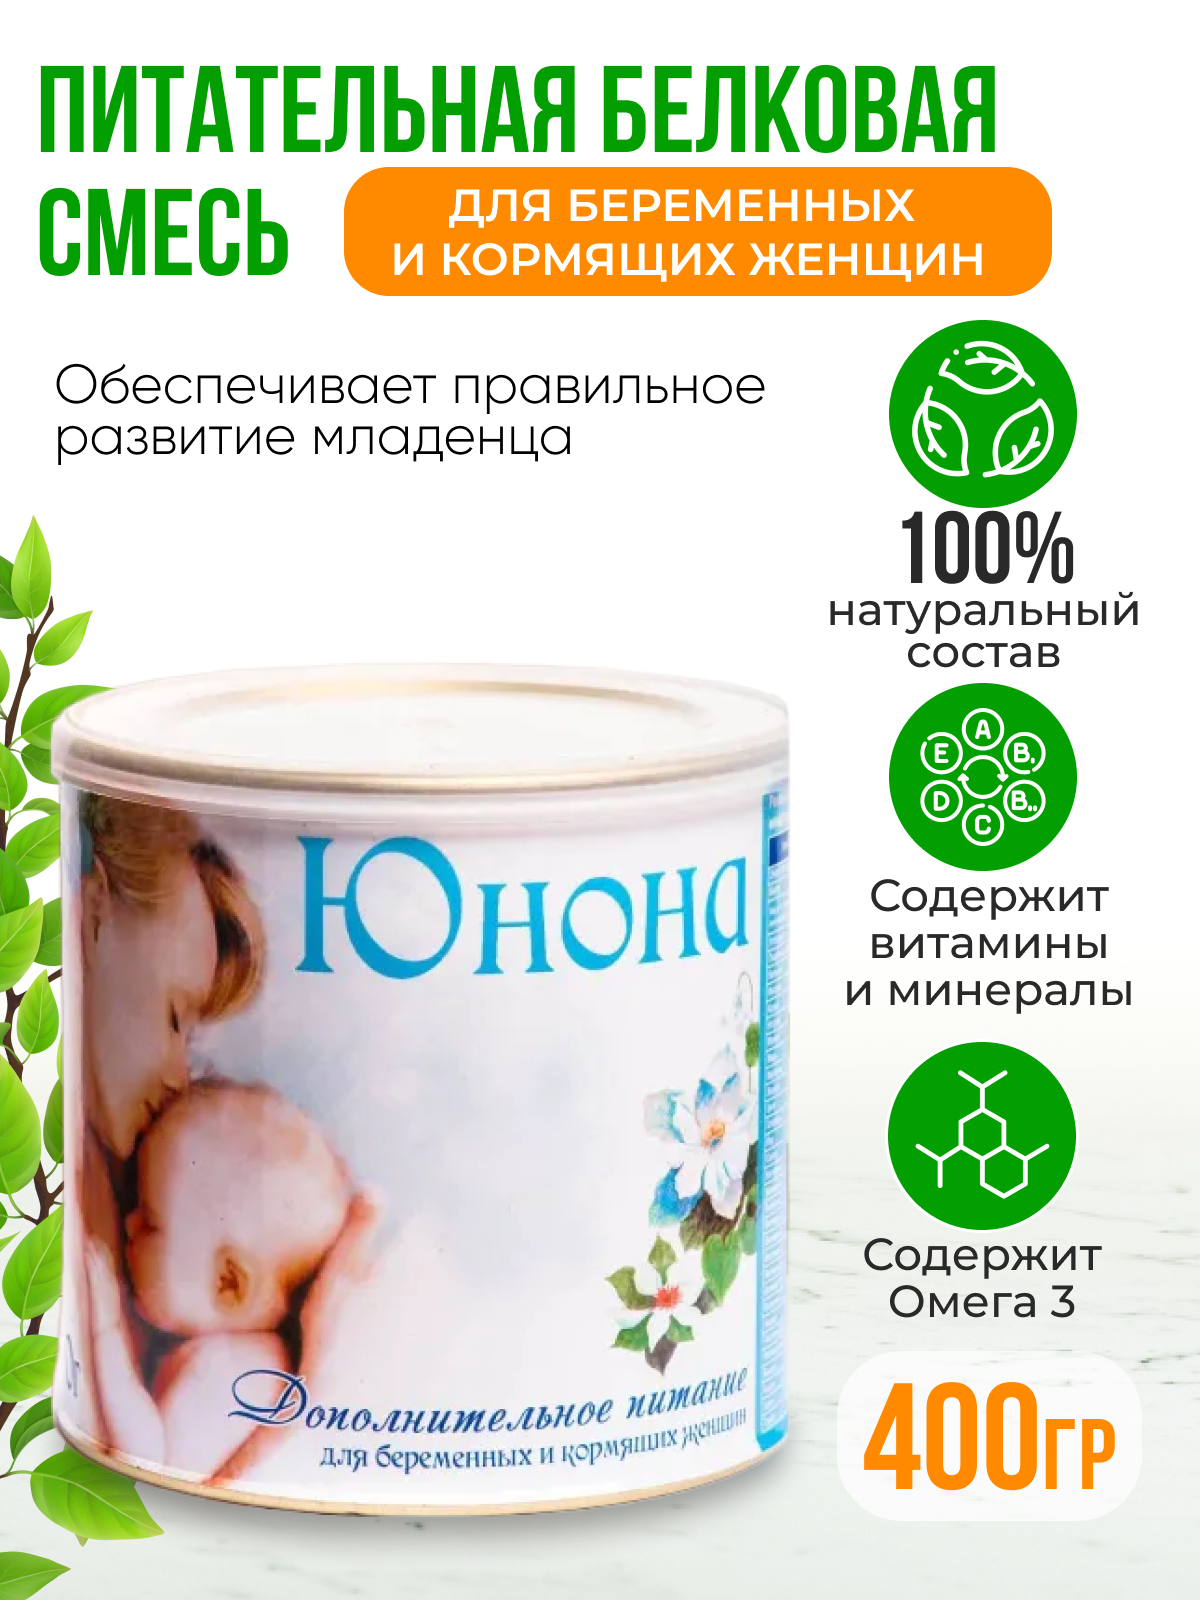 Смесь Витапром Юнона сухая для беременных и кормящих женщин 400 г ООО "Витапром" RU - фото №15